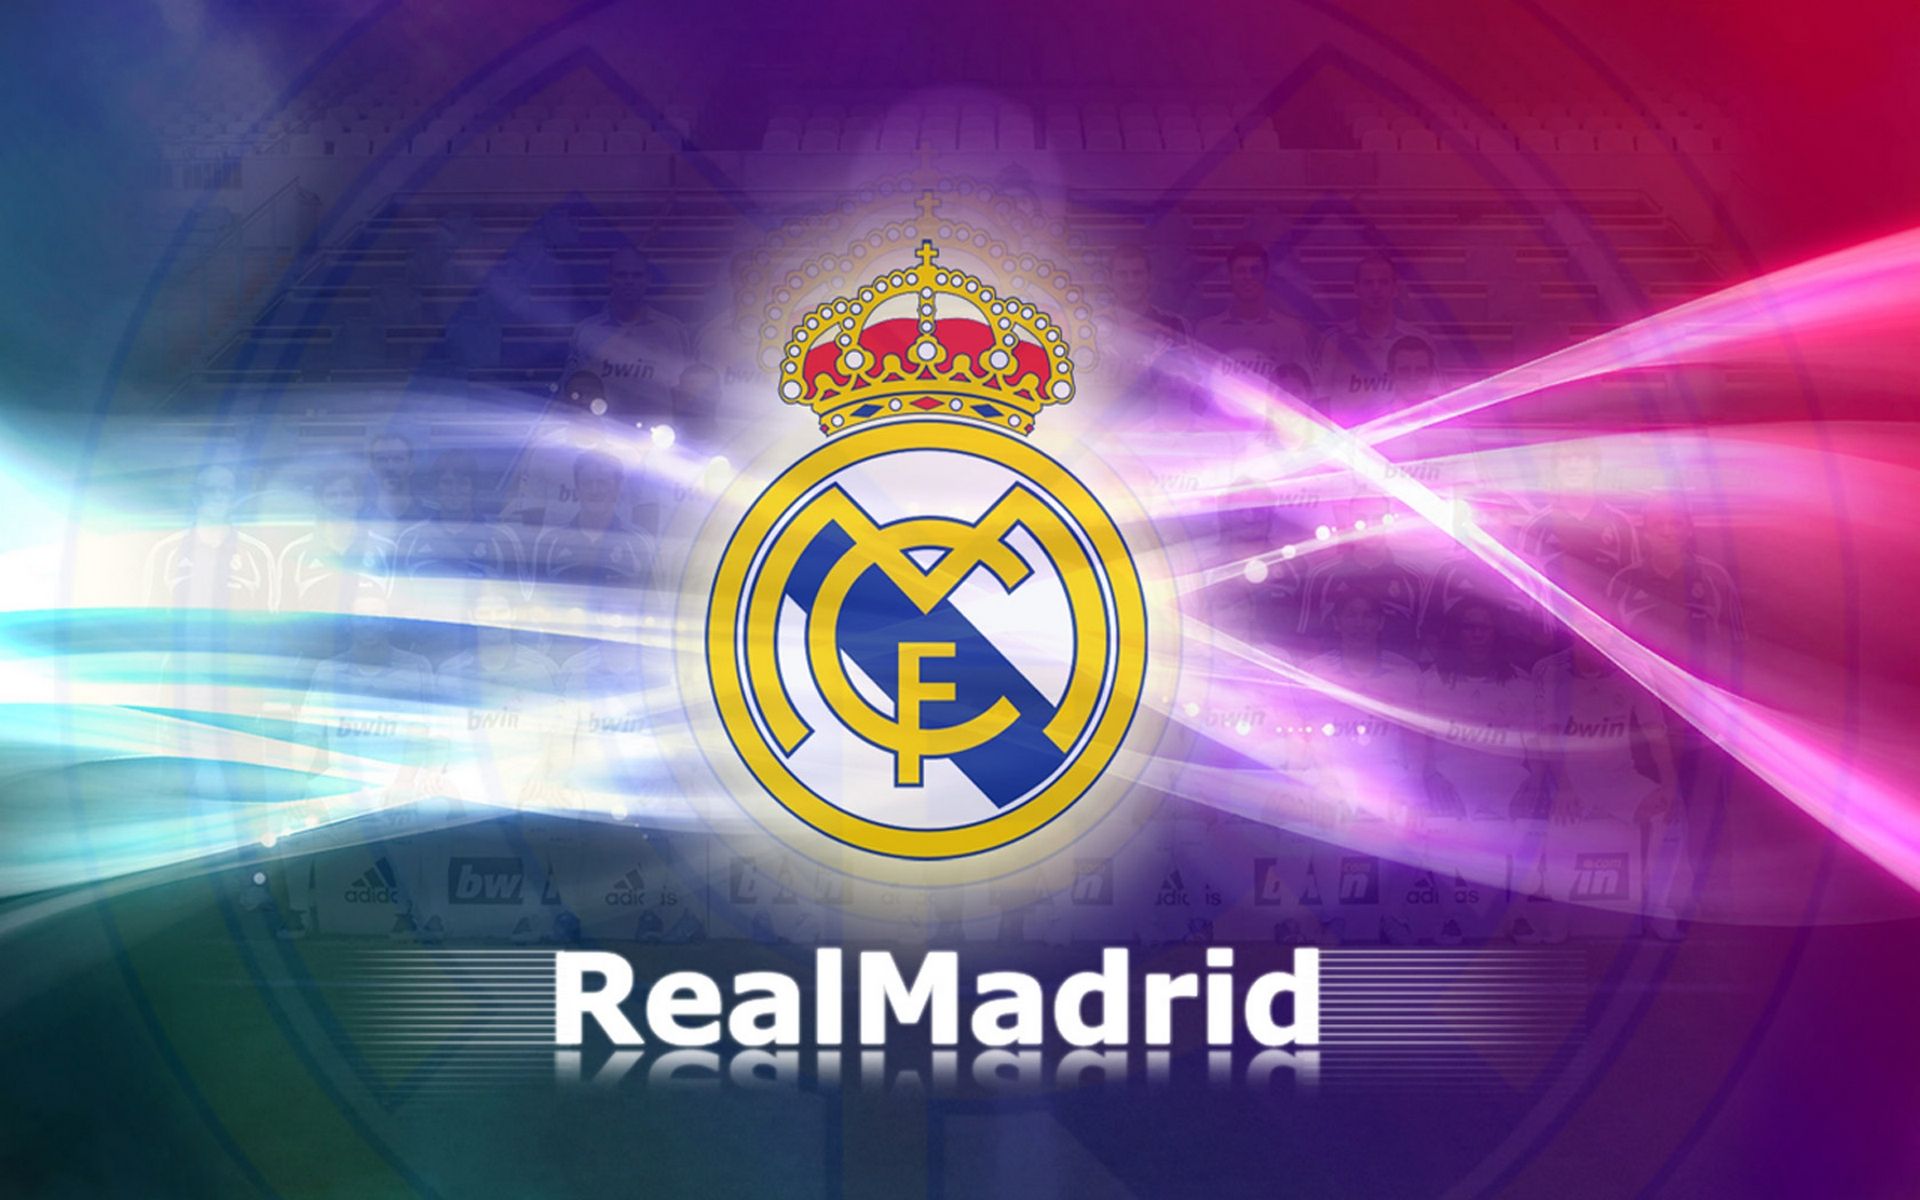 Real Madrid là đội bóng vô địch UEFA Champions League. Hình nền Real Madrid UEFA Champions League Wallpaper mang đến cho bạn niềm tự hào và cảm giác chinh phục thành công. Hãy trang trí màn hình của bạn với những hình ảnh hoành tráng của đội bóng yêu thích để thể hiện sự ủng hộ không giới hạn của bạn!